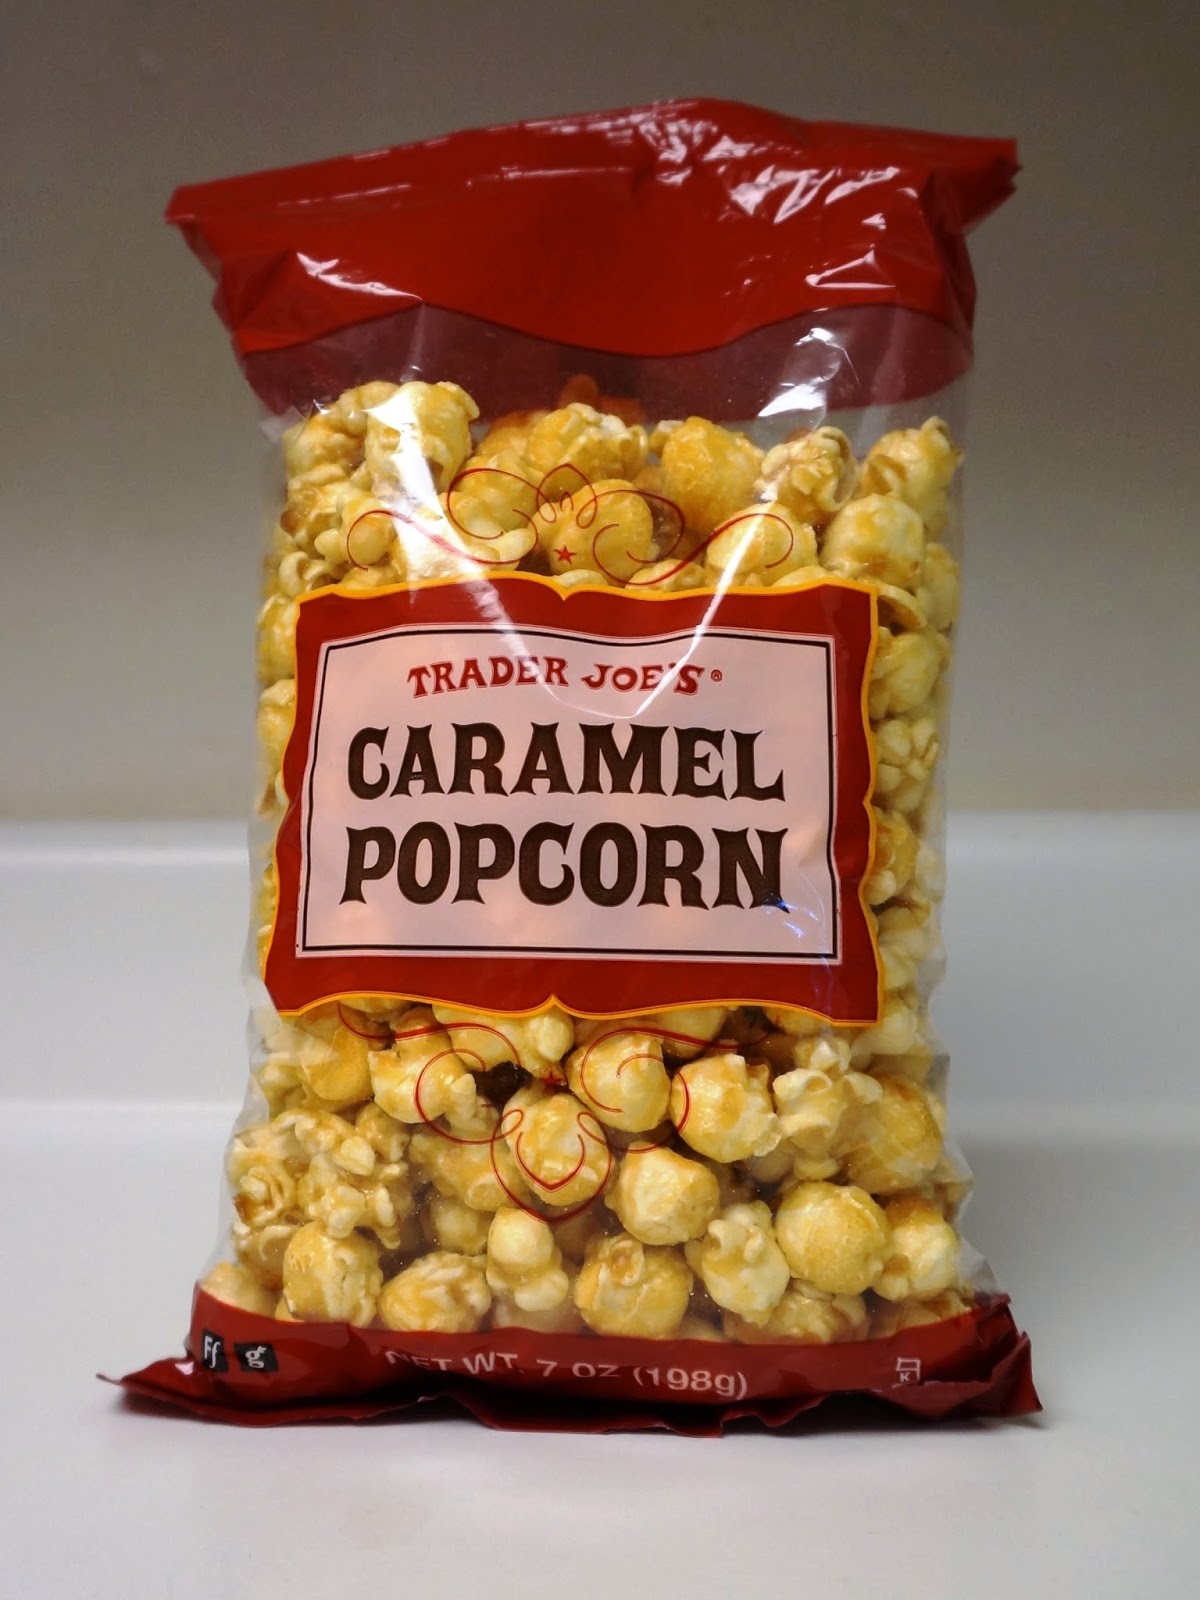 Exploring Trader Joe's: Trader Joe's Caramel Popcorn